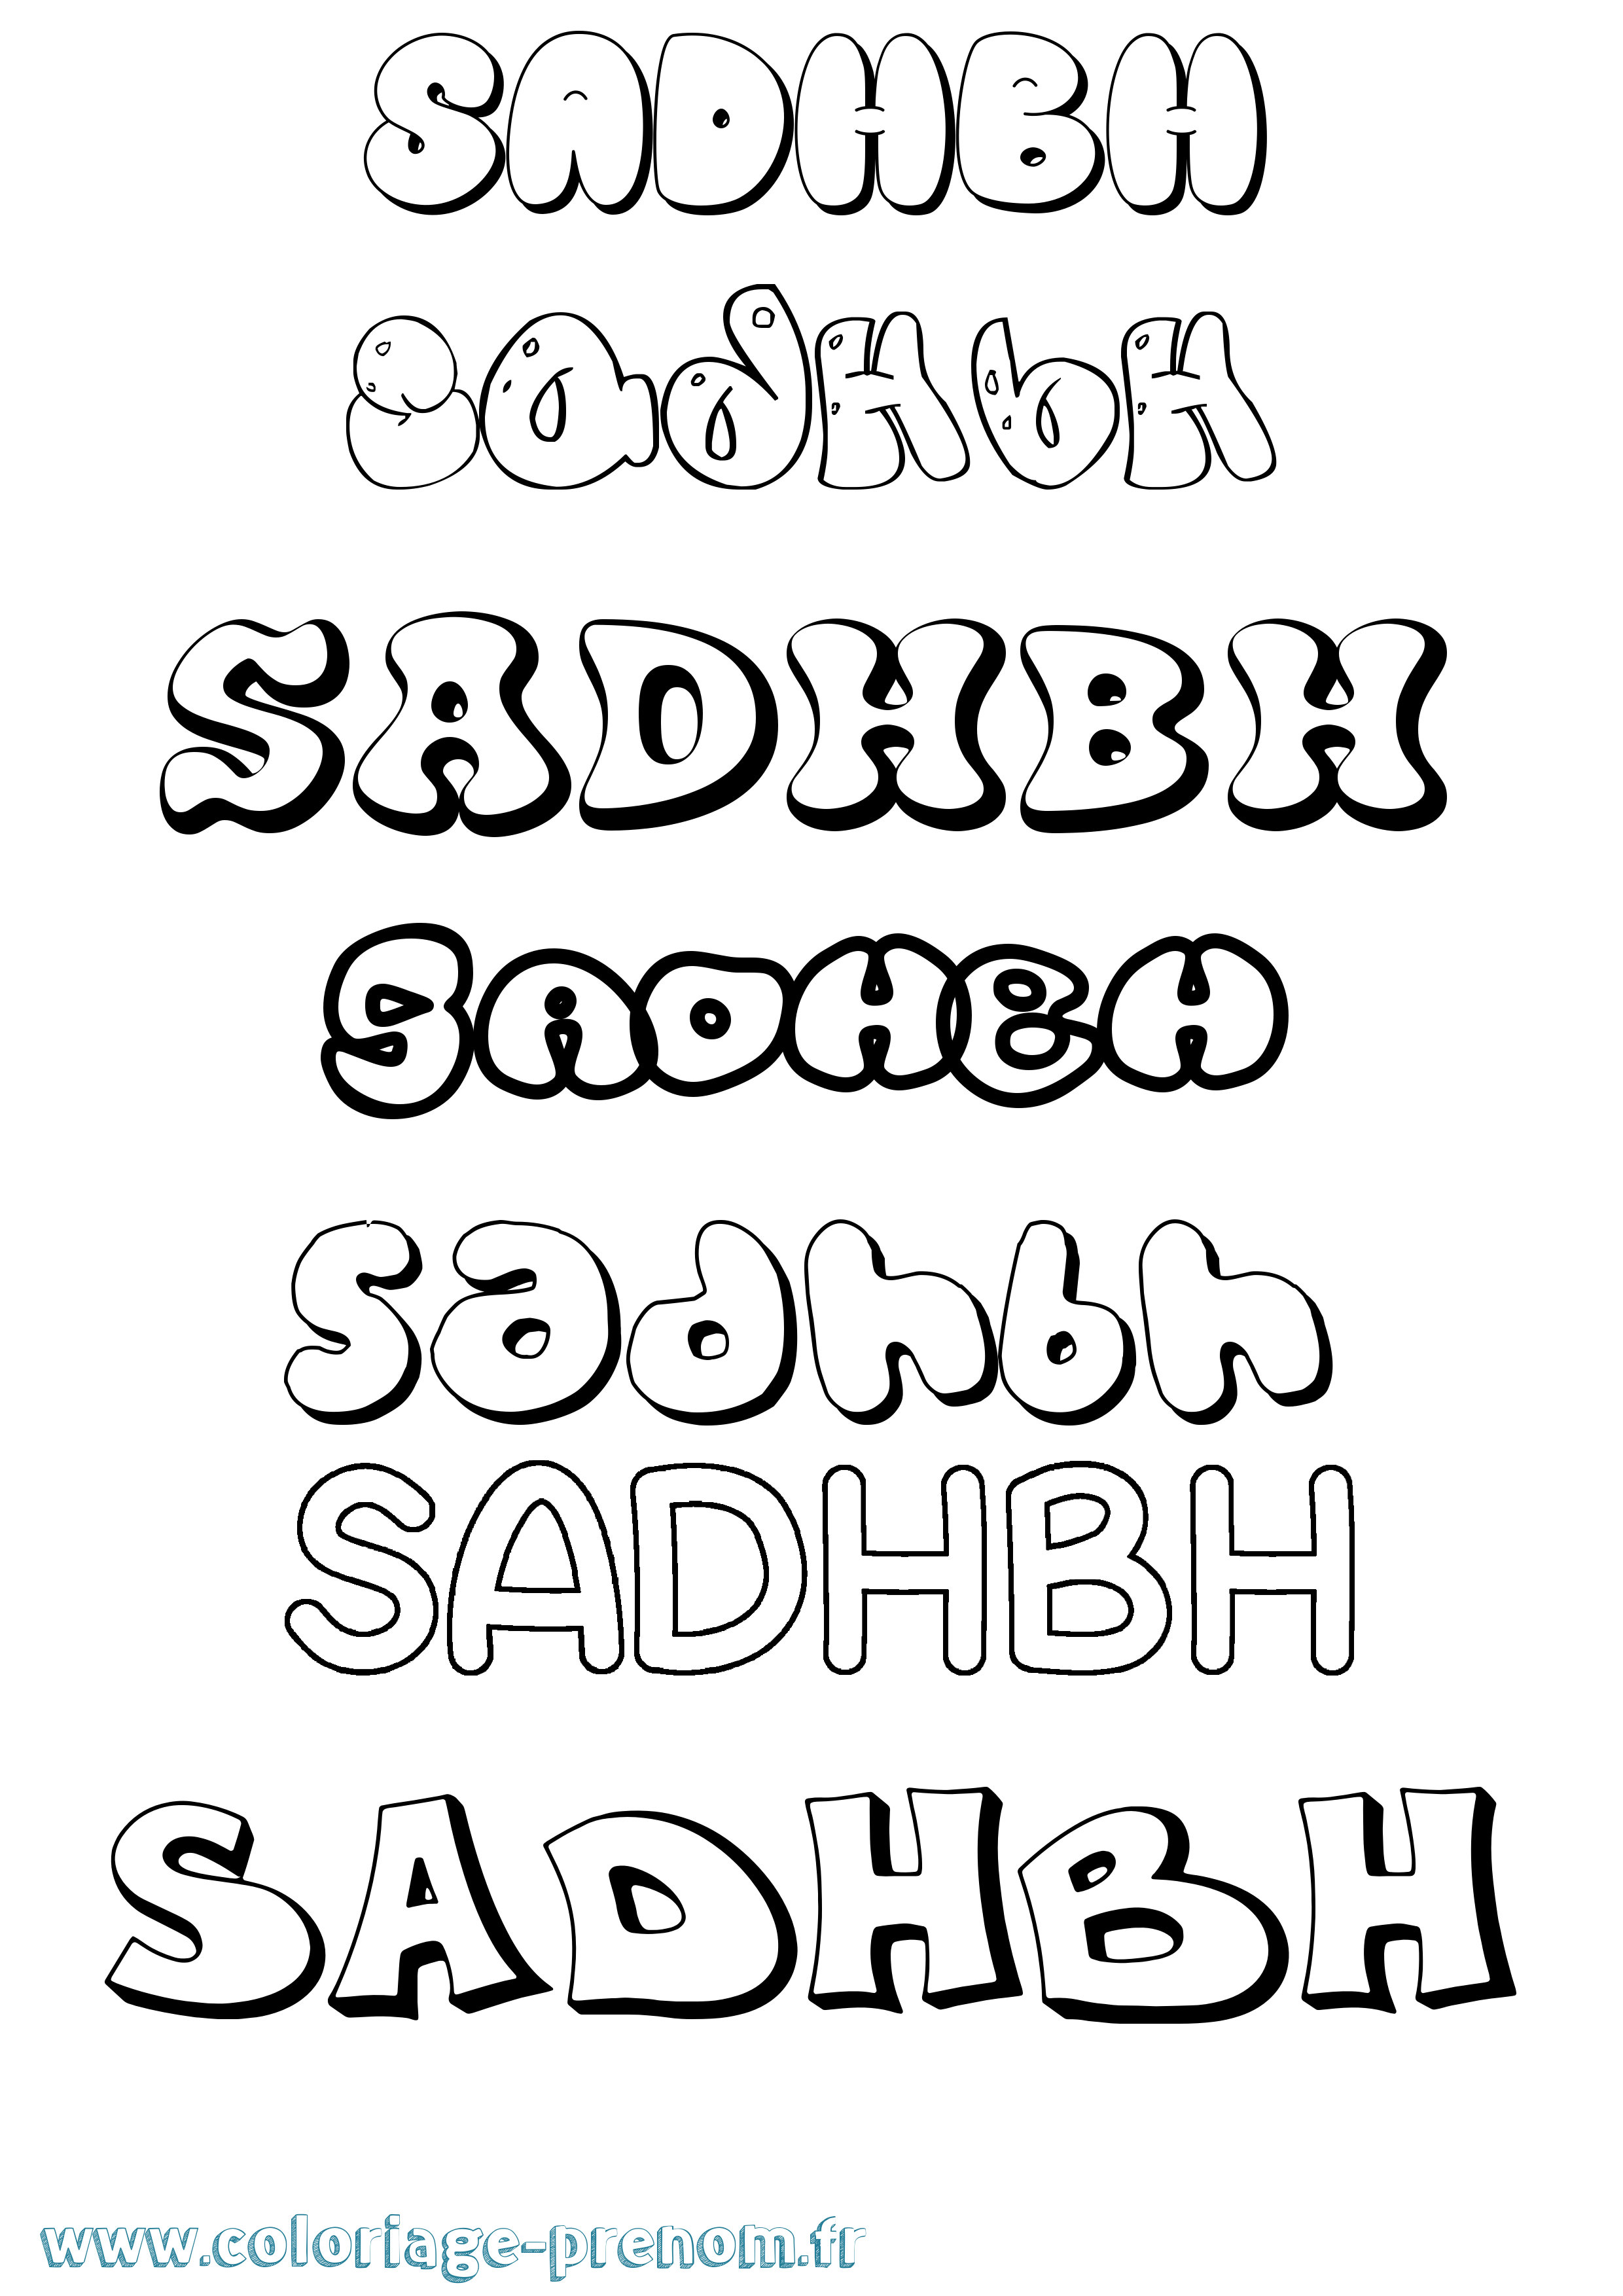 Coloriage prénom Sadhbh Bubble